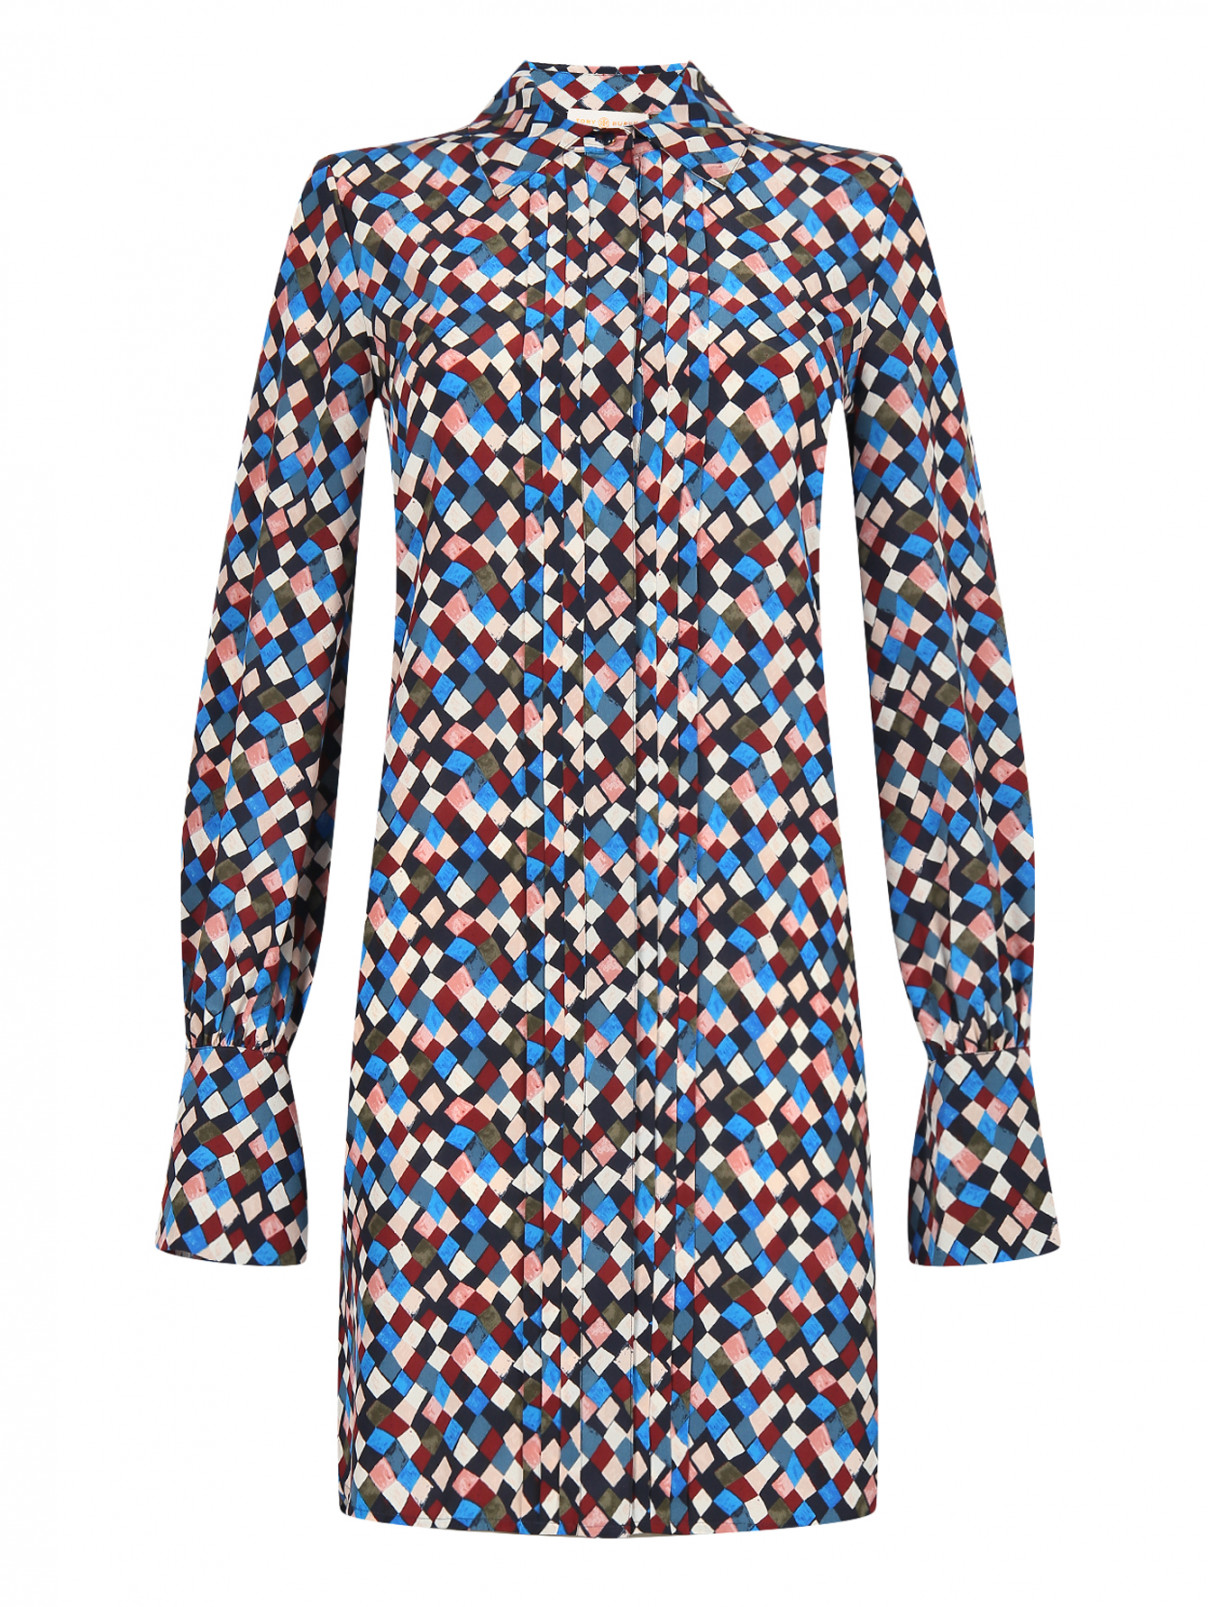 Платье из шелка свободного кроя с узором Tory Burch  –  Общий вид  – Цвет:  Узор